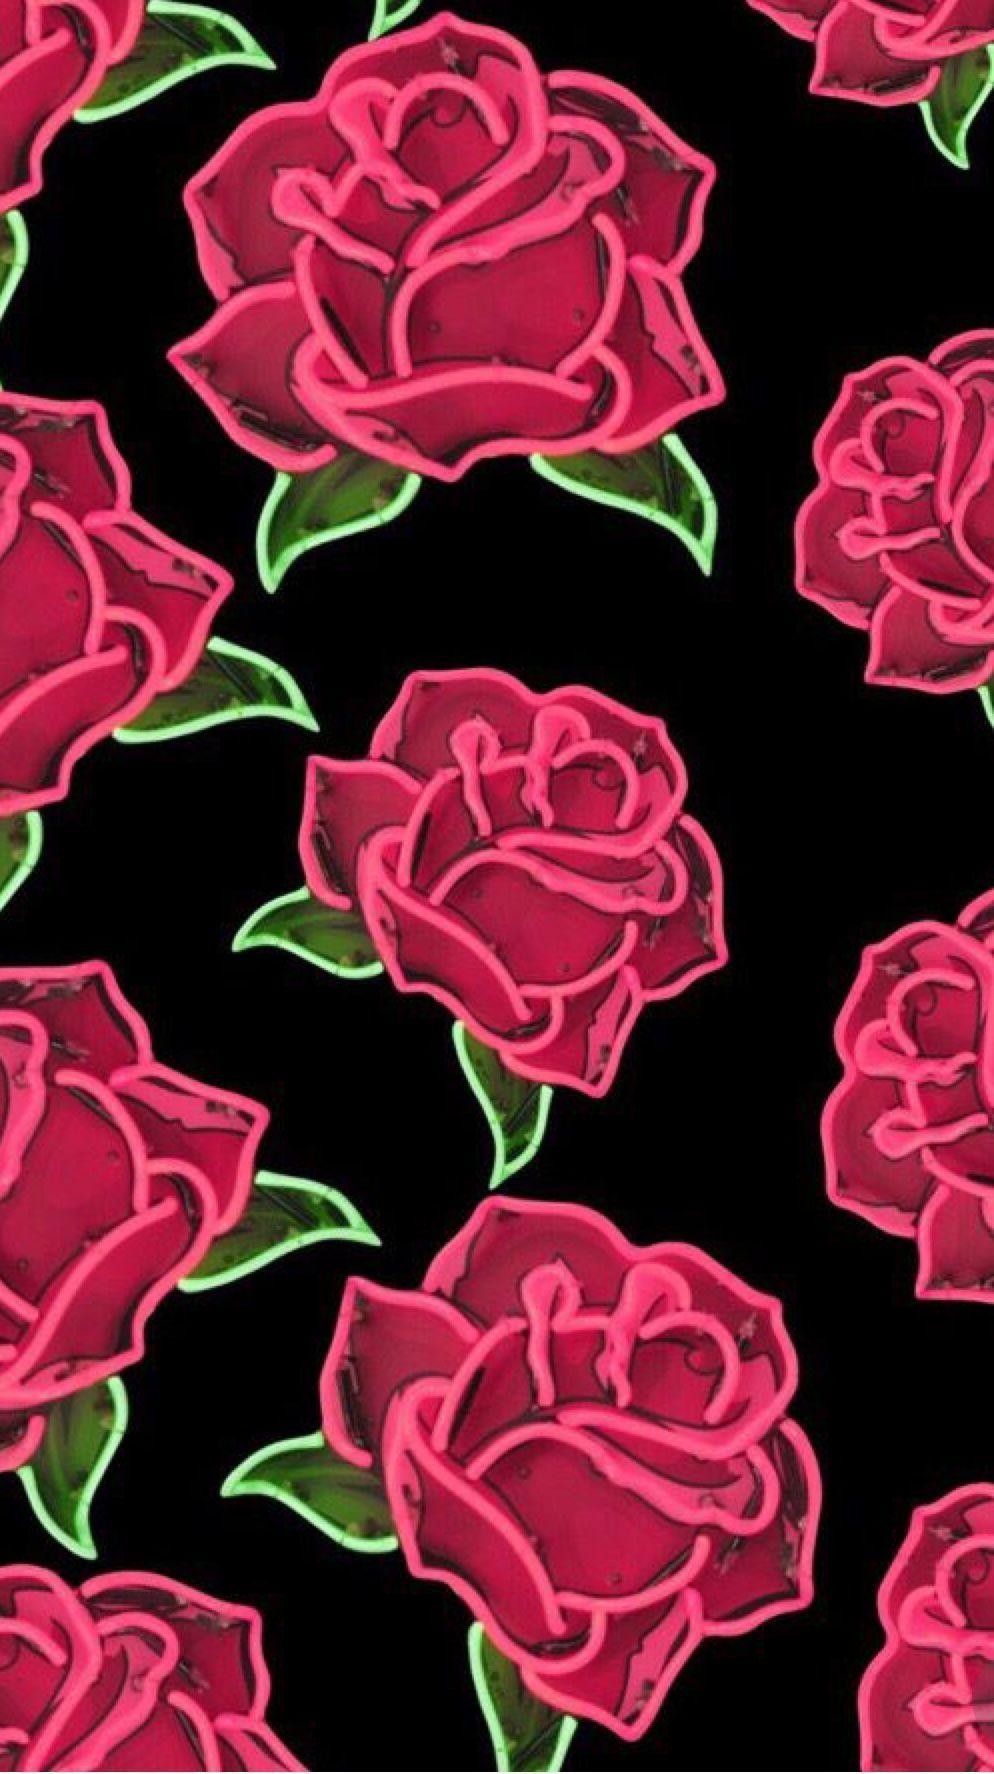 Hãy đưa mình vào thế giới của những bông hoa hồng tươi đẹp với những hình nền Rose iPad Wallpapers dành cho bạn. Trải nghiệm một không gian nhiều màu sắc và tươi trẻ với những hình ảnh đẹp và đầy sống động.